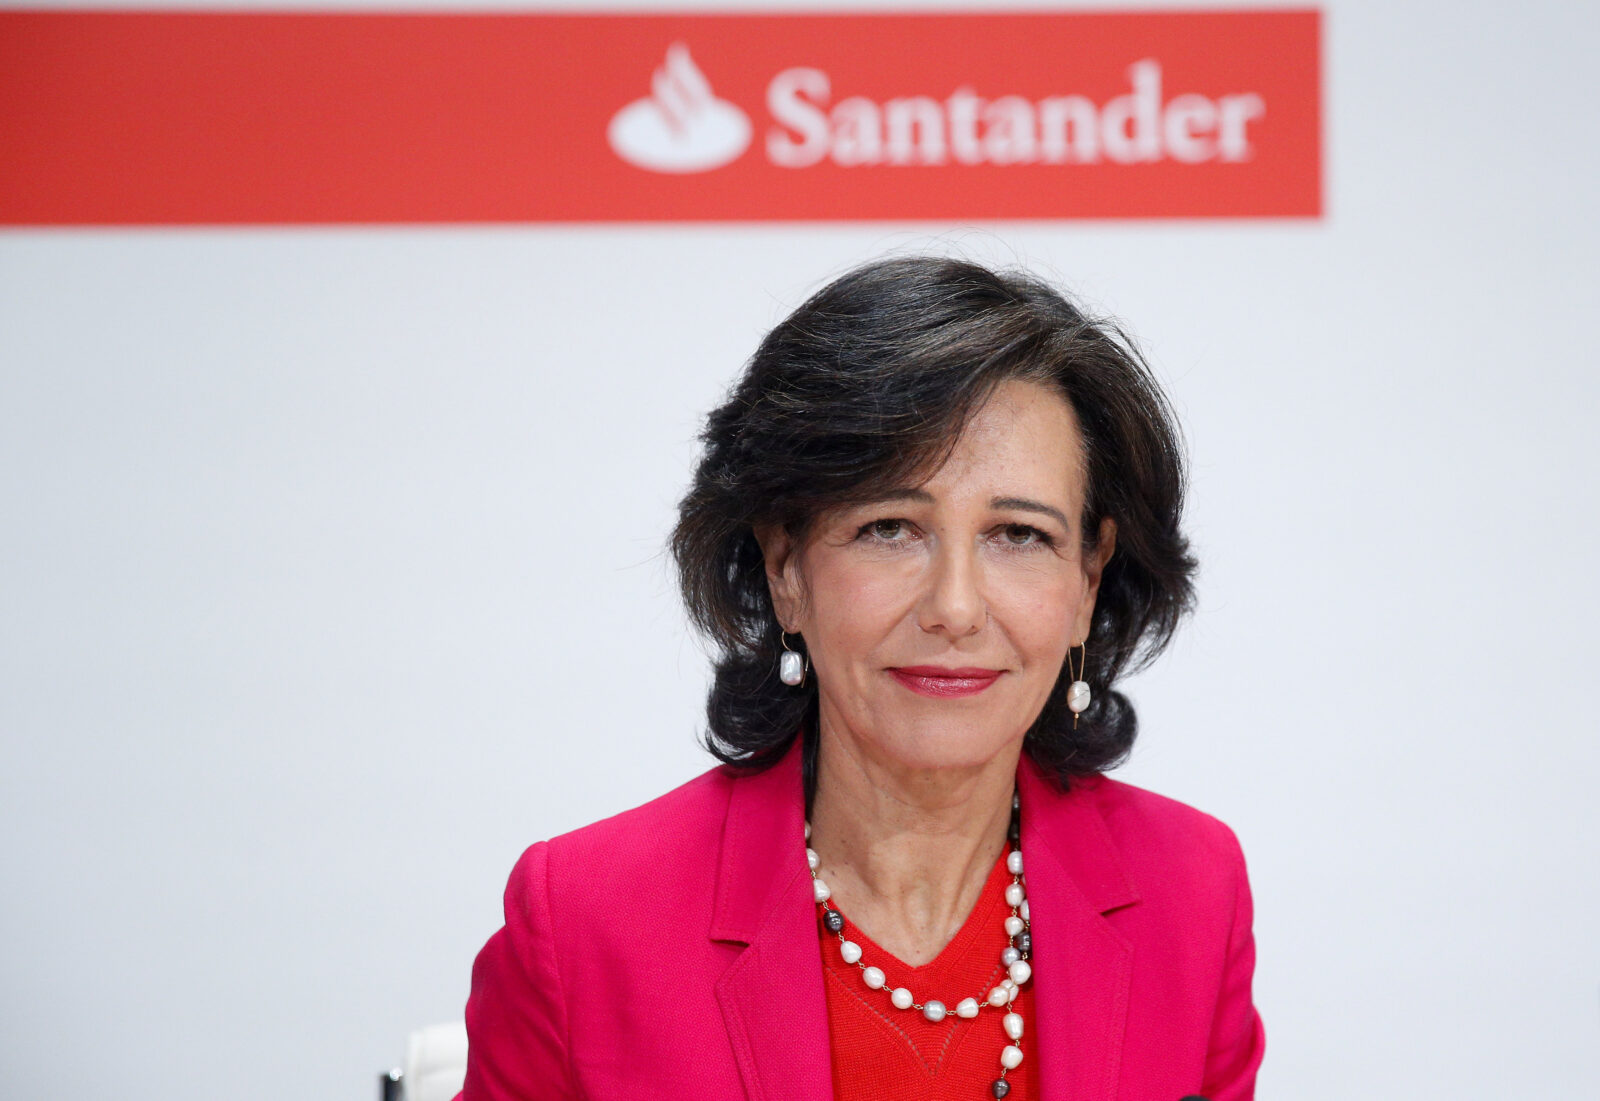 Ana Botin, predsjednica Santandera REUTERS